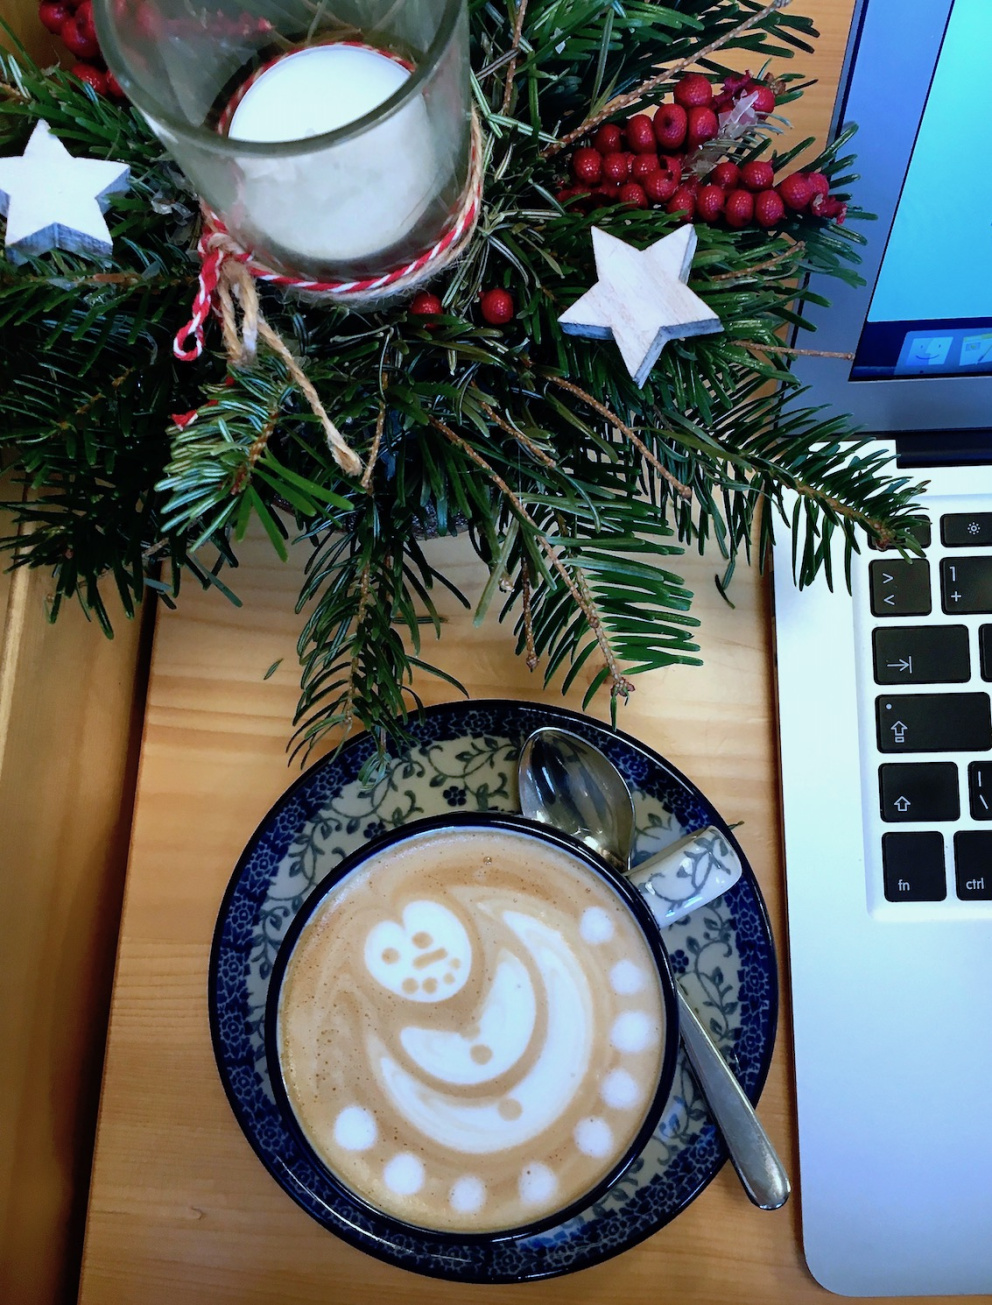 Zapátrejte na internetu, jestli se ve vašem okolí nenachází úklidová firma. Pak si můžete udělat kávu a užívat si vánoční pohodu z gauče!